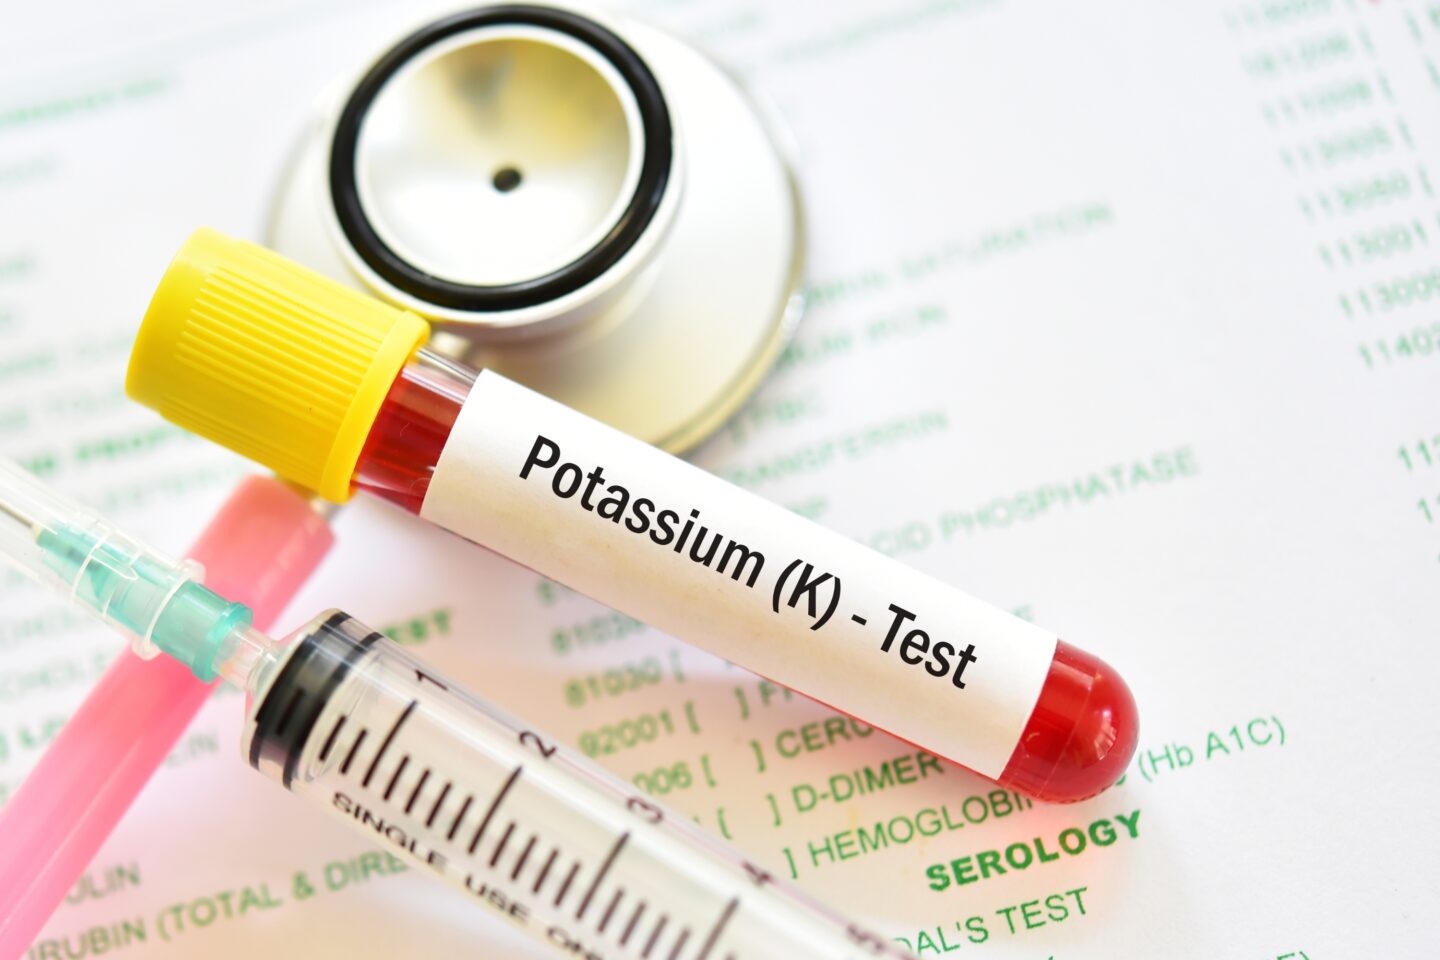 potassium level test